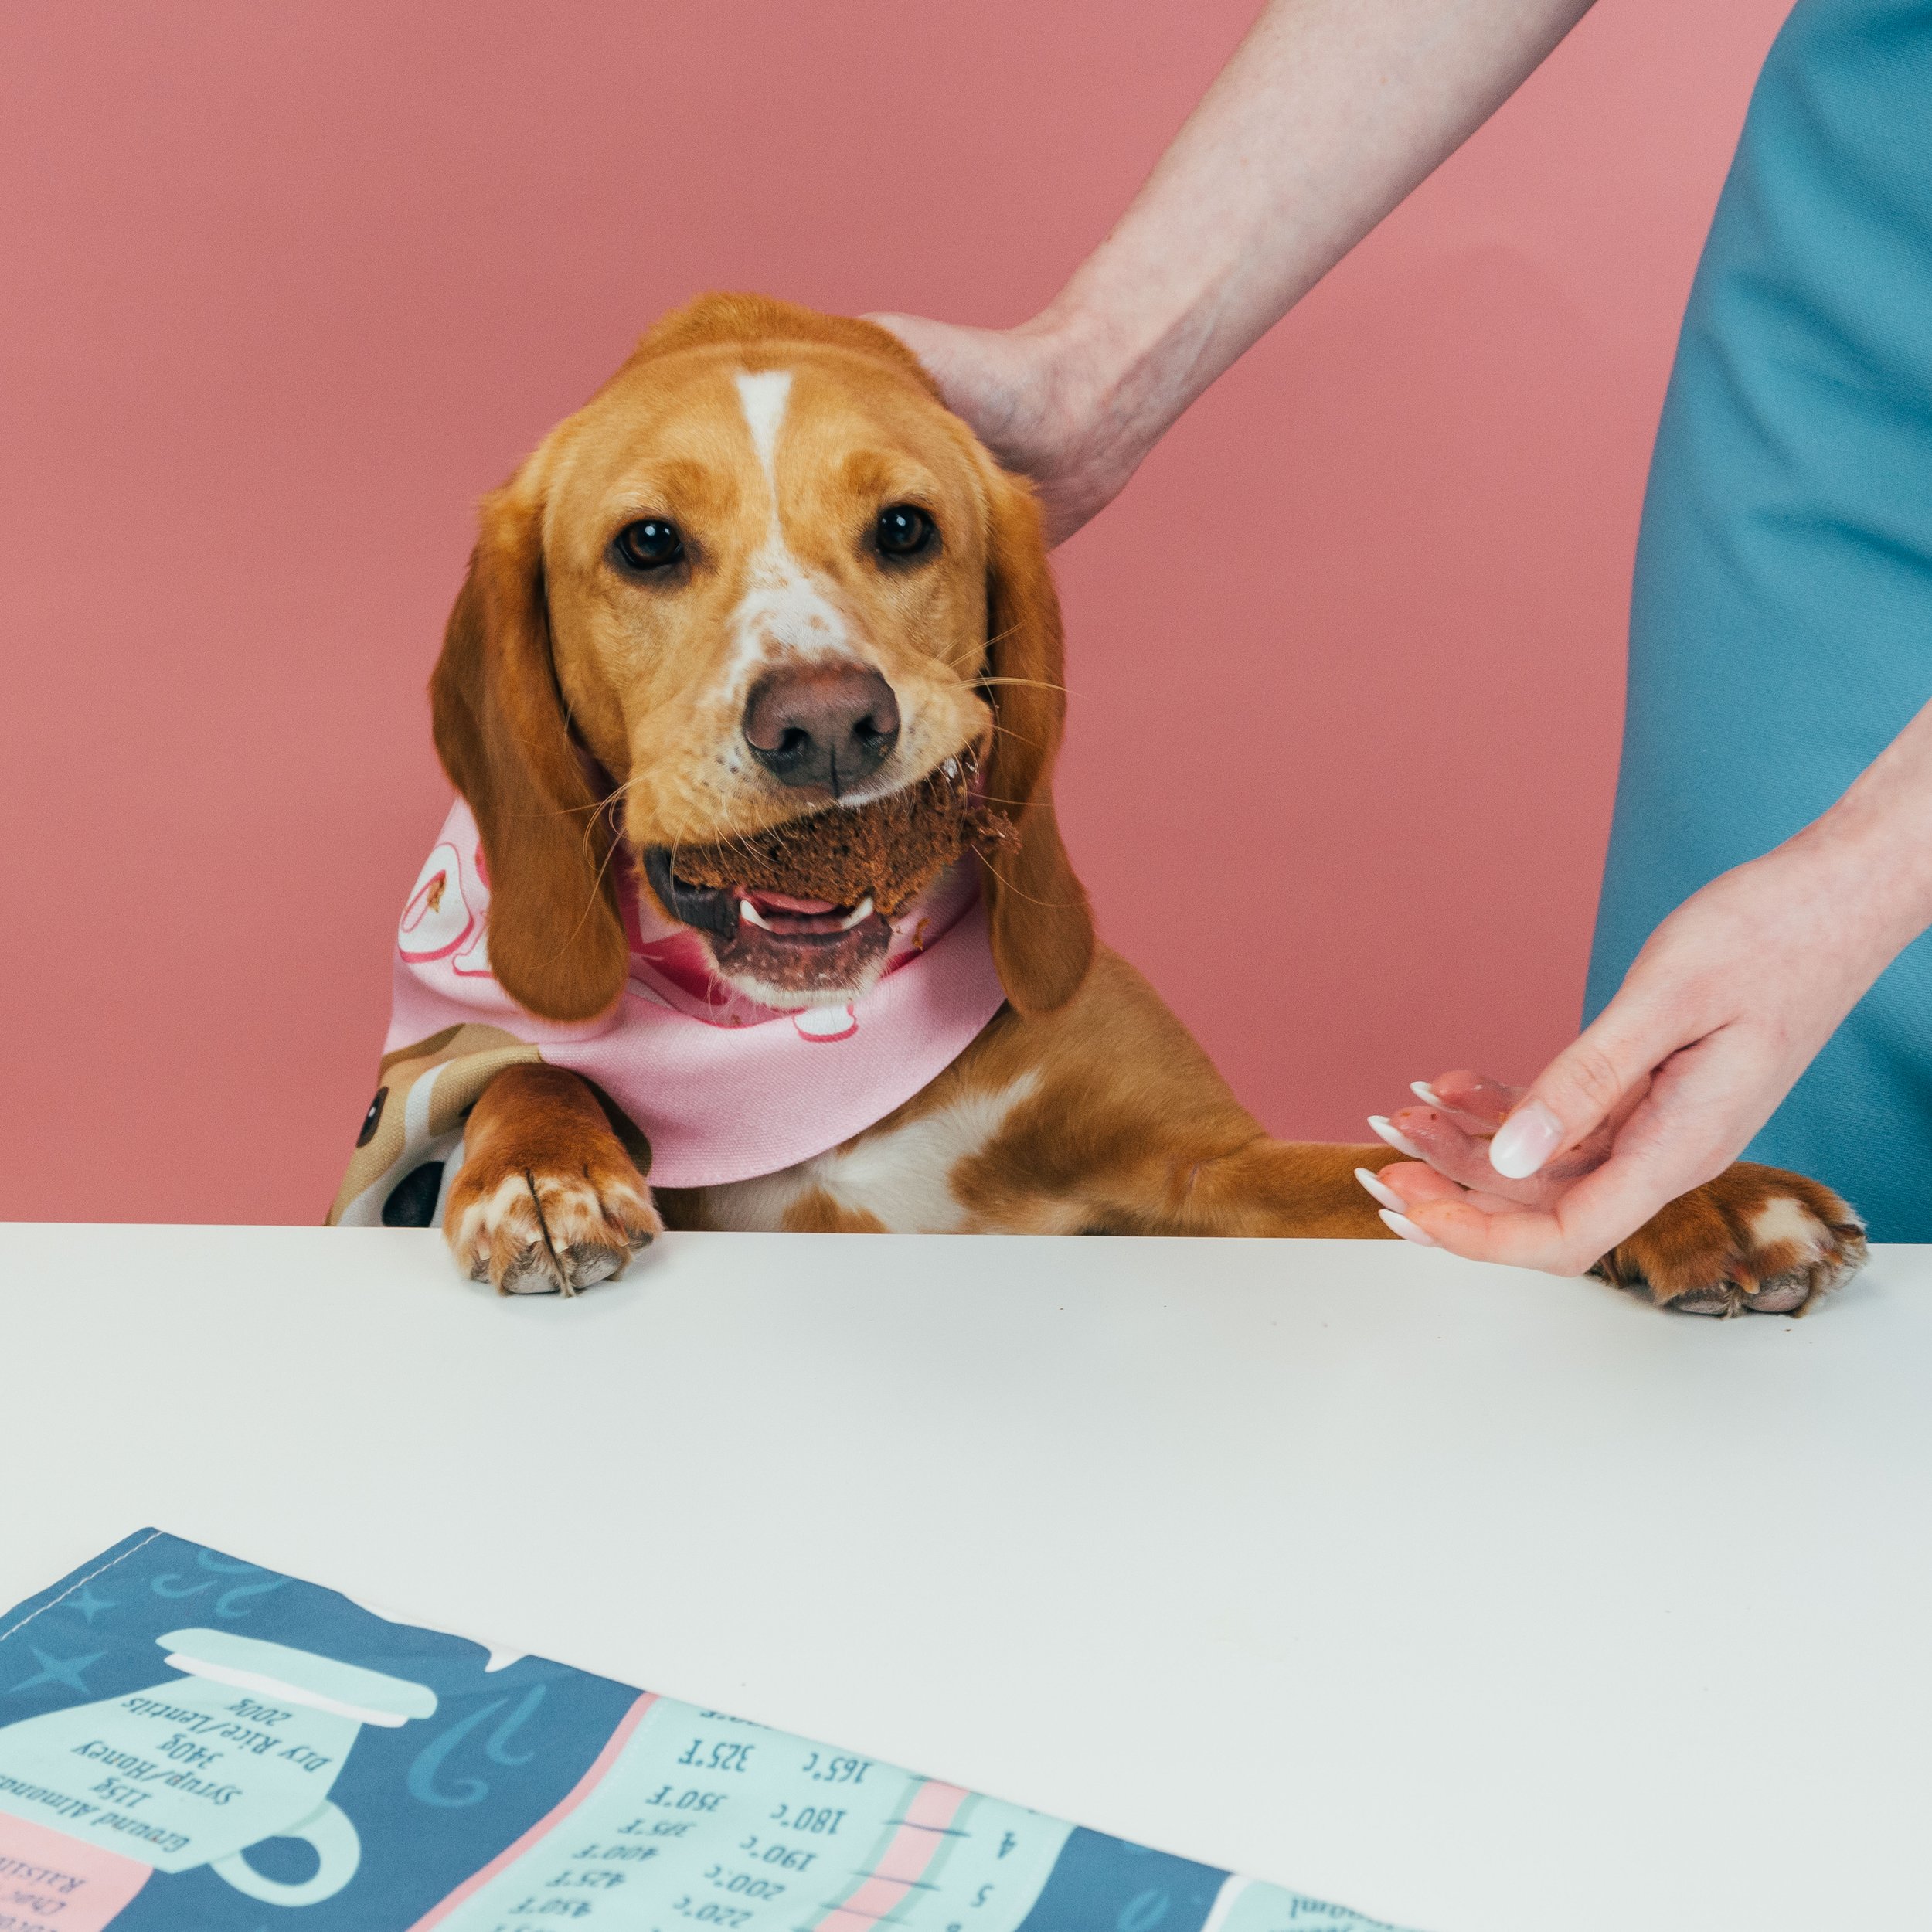 dog bandana, personalised dog bandana, bandana for dog, customised dog bandana, dog brownies, dog recipe, dog baking